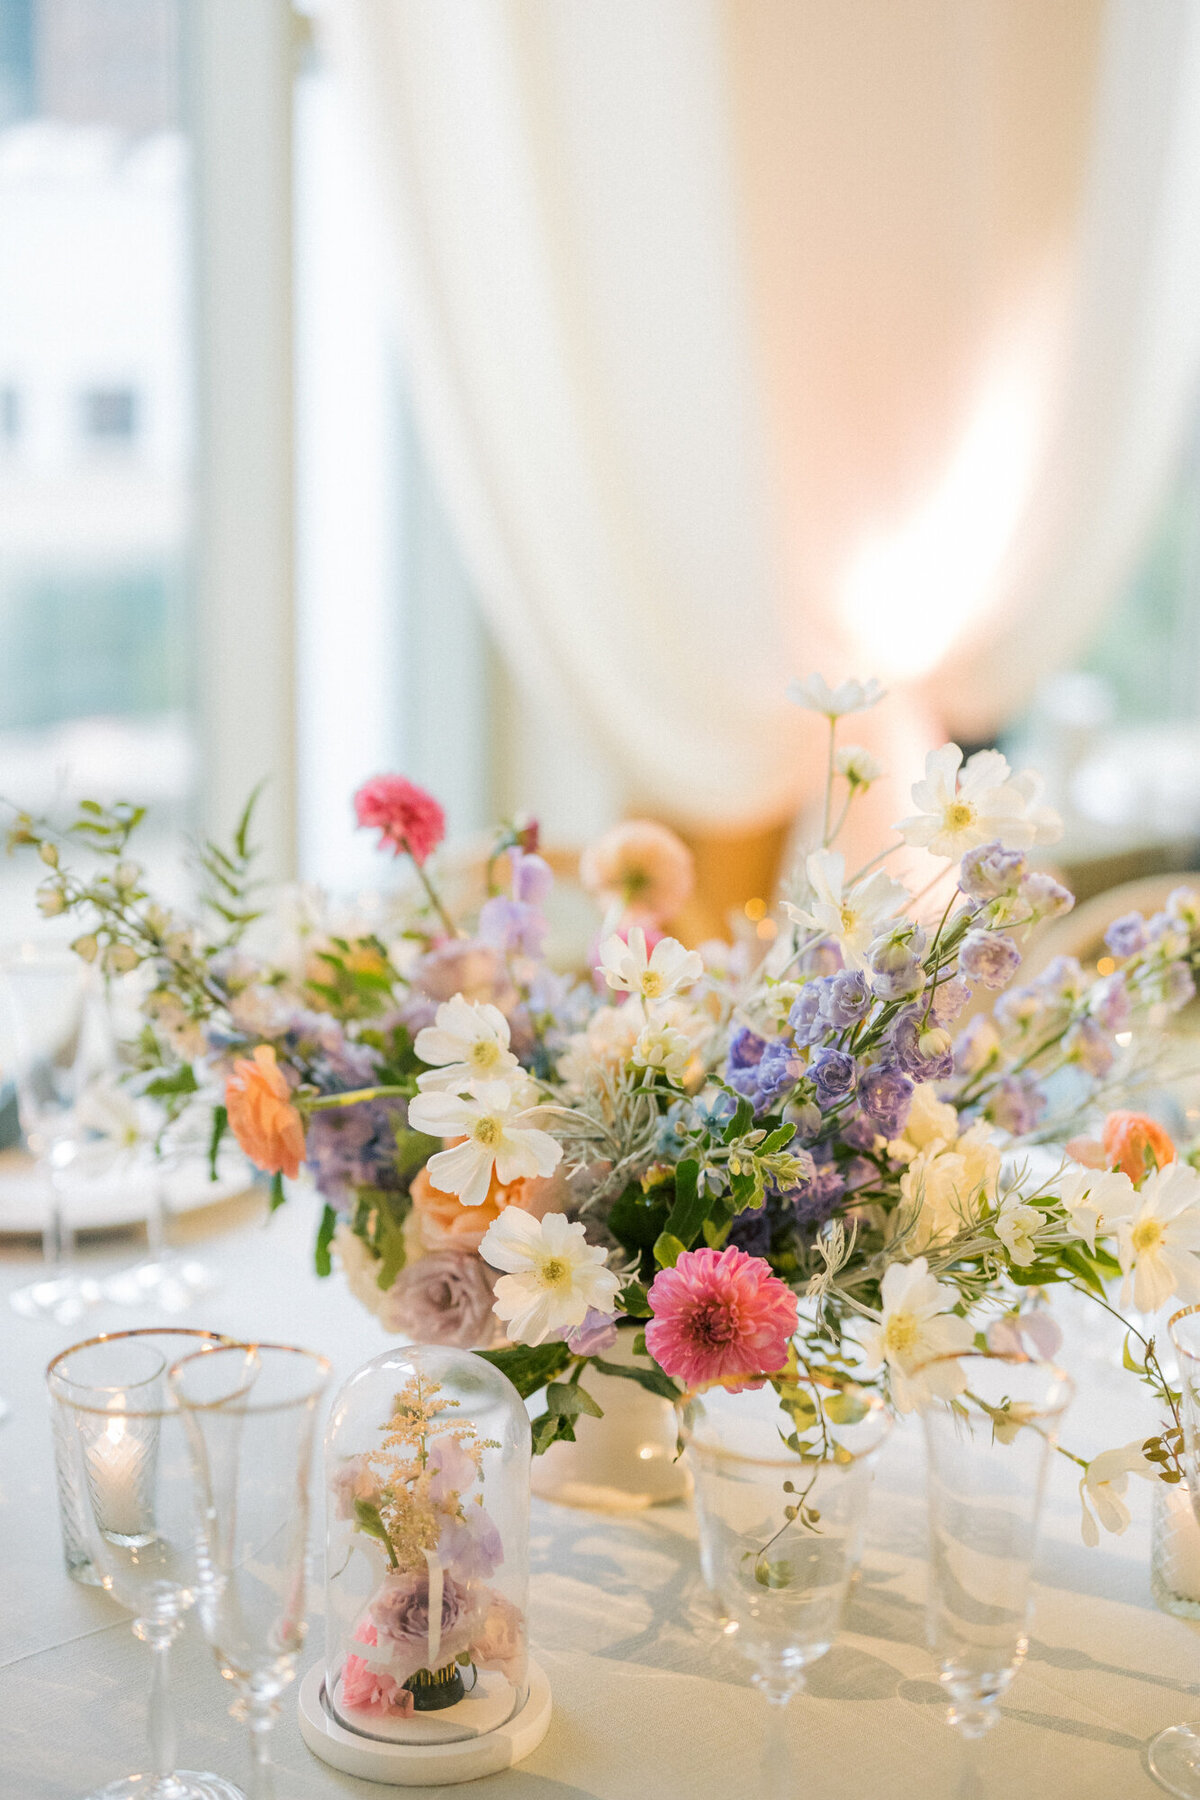 A romantic dinner party floral arrangement